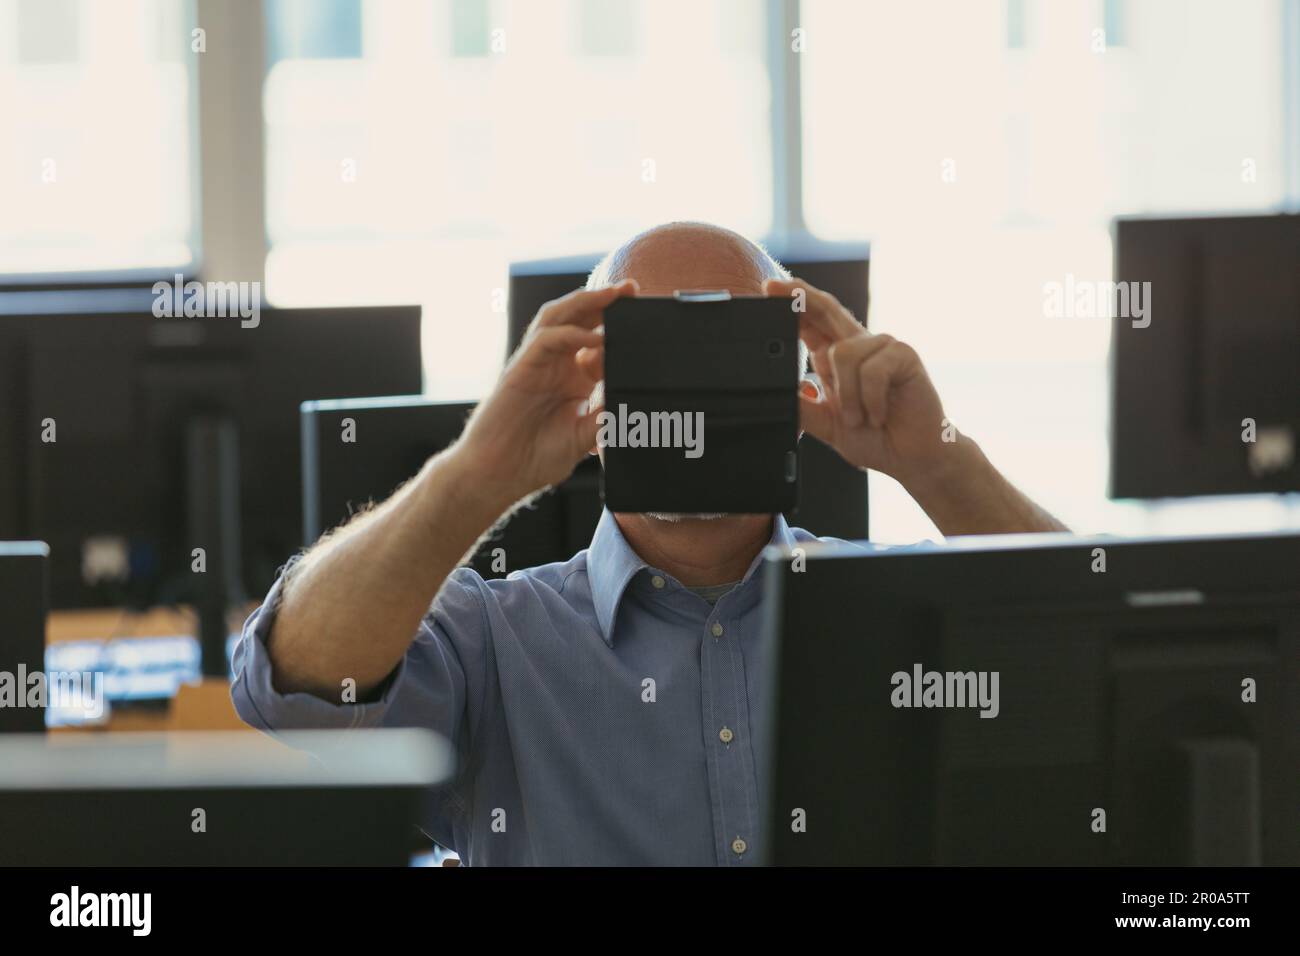 Ein Mann nimmt mit seinem Handy ein Foto oder Video in einem Raum voller Desktop-PCs auf; dies ist ein großes Datenanalysezentrum Stockfoto